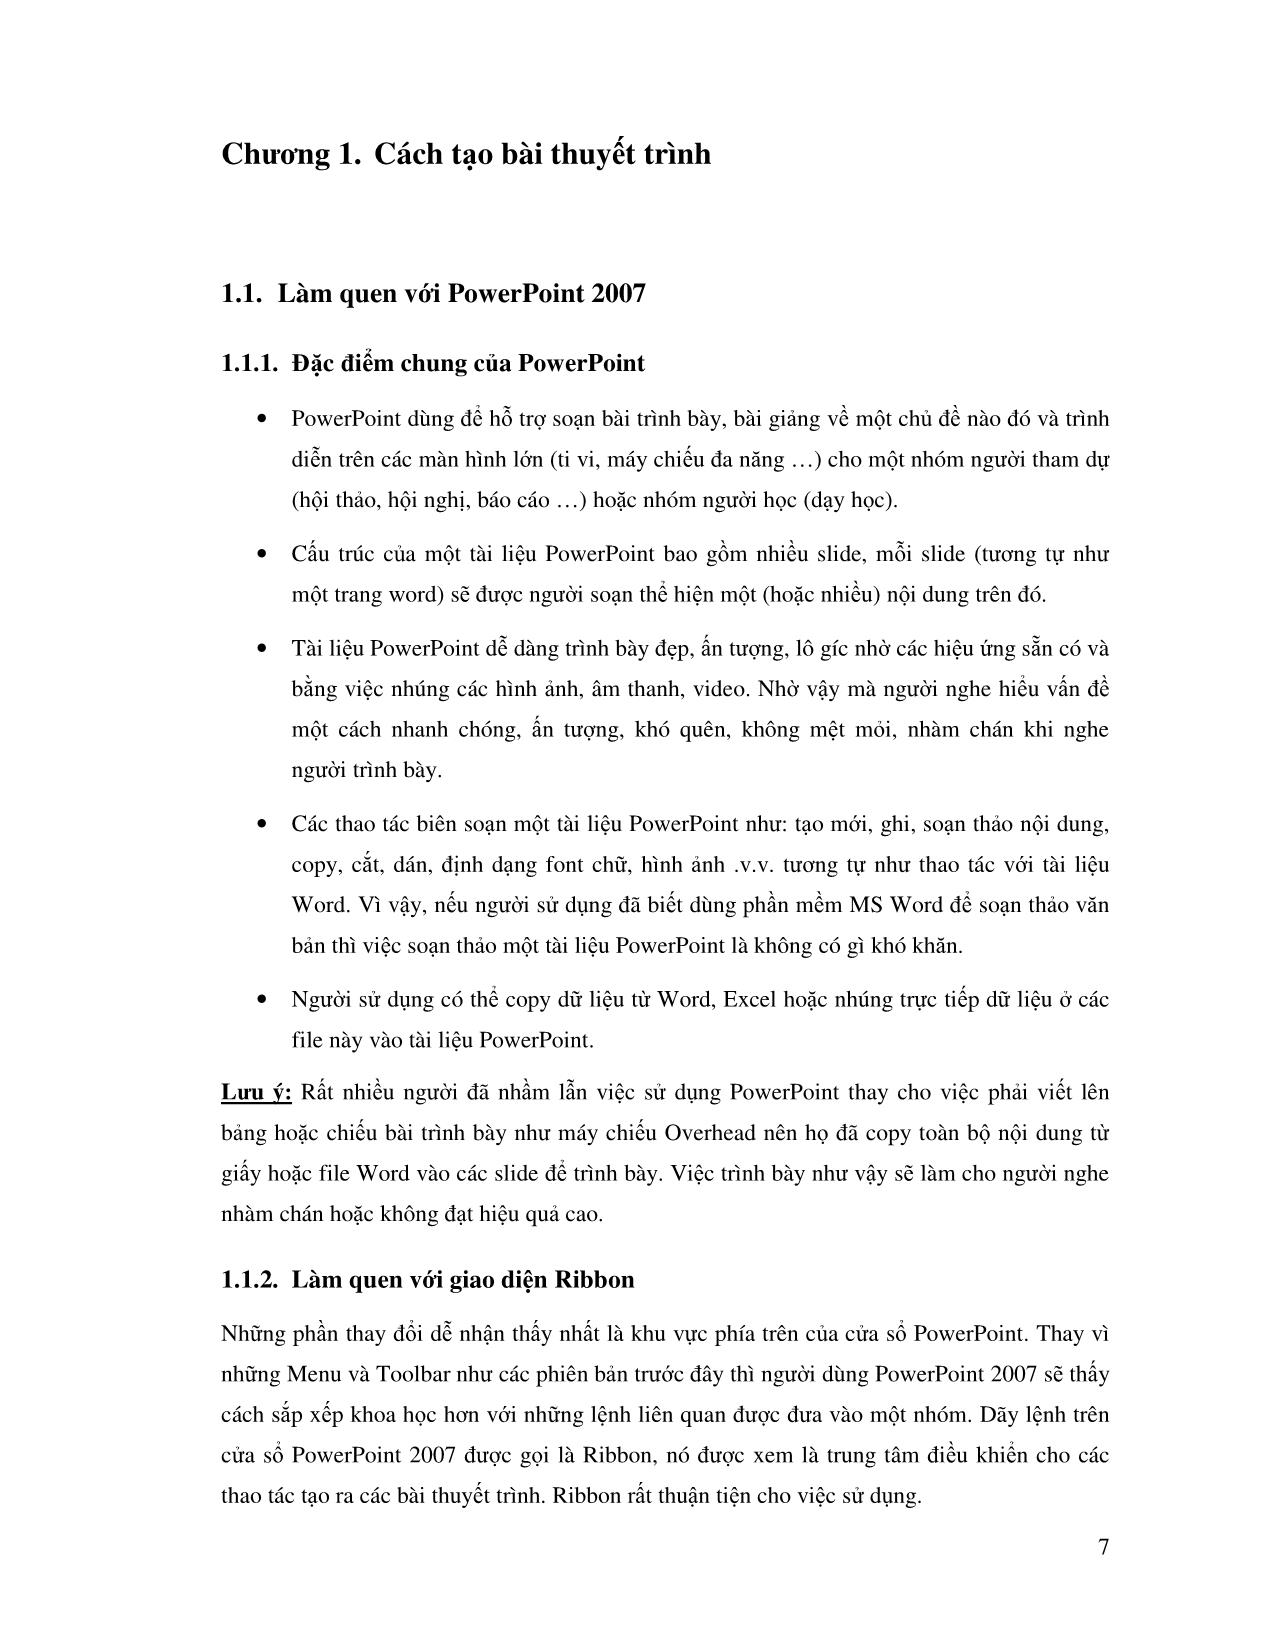 Giáo trình Microsoft Office PowerPoint 2007 trang 7